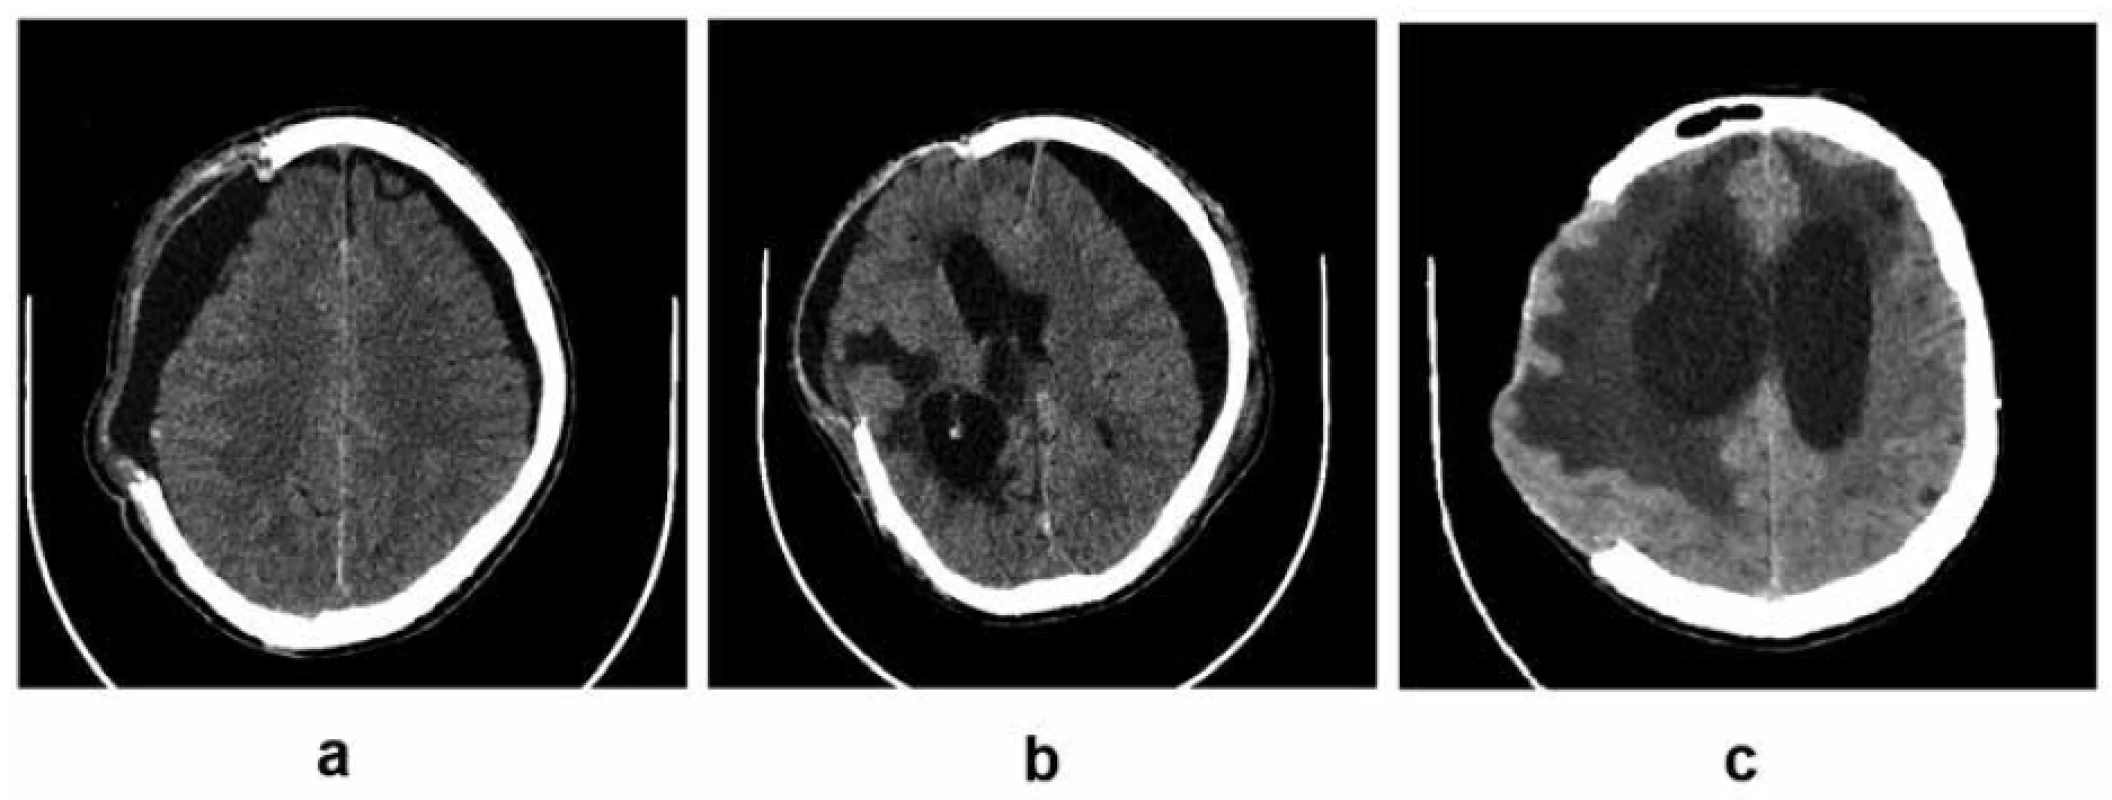 Komplikácie vyplývajúce z narušenej likvorovej dynamiky:<br>
3a – bilaterálne subdurálne hygrómy, predominantne na strane kraniektómie; 3b – bilaterálne subdurálne
hygrómy, predominantne kontralaterálny hygróm vyvolávajúci kompresiu a externú herniáciu mozgu, presun
stredočiarových štruktúr, ventrikulomegália; 3c – hydrocefalus (archív autora)<br>
Fig. 3. Complications resulting from impaired cerebrospinal fluid dynamics:<br>
3a – bilateral subdural hygromas, predominantly at the site of craniectomy; 3b – bilateral subdural hygromas,
predominantly contralateral hygroma causing brain compression, external herniation and midline
shift, ventriculomegaly; 3c – hydrocephalus (author’s archive)